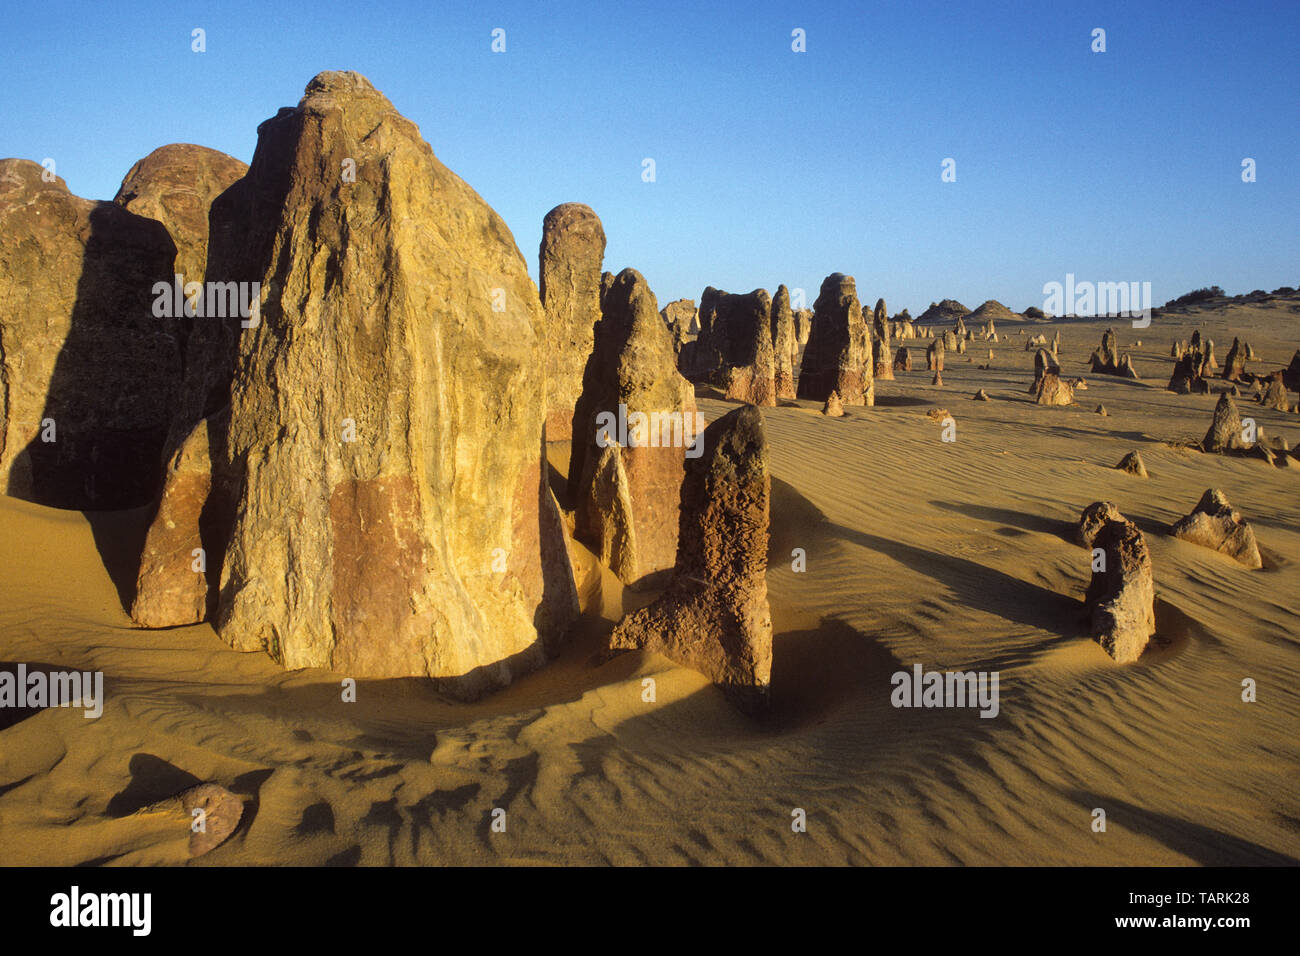 Les Pinnacles, le Parc National de Nambung, Australie occidentale, Australie formations calcaires connue sous le nom de 'The Pinnacles' Banque D'Images